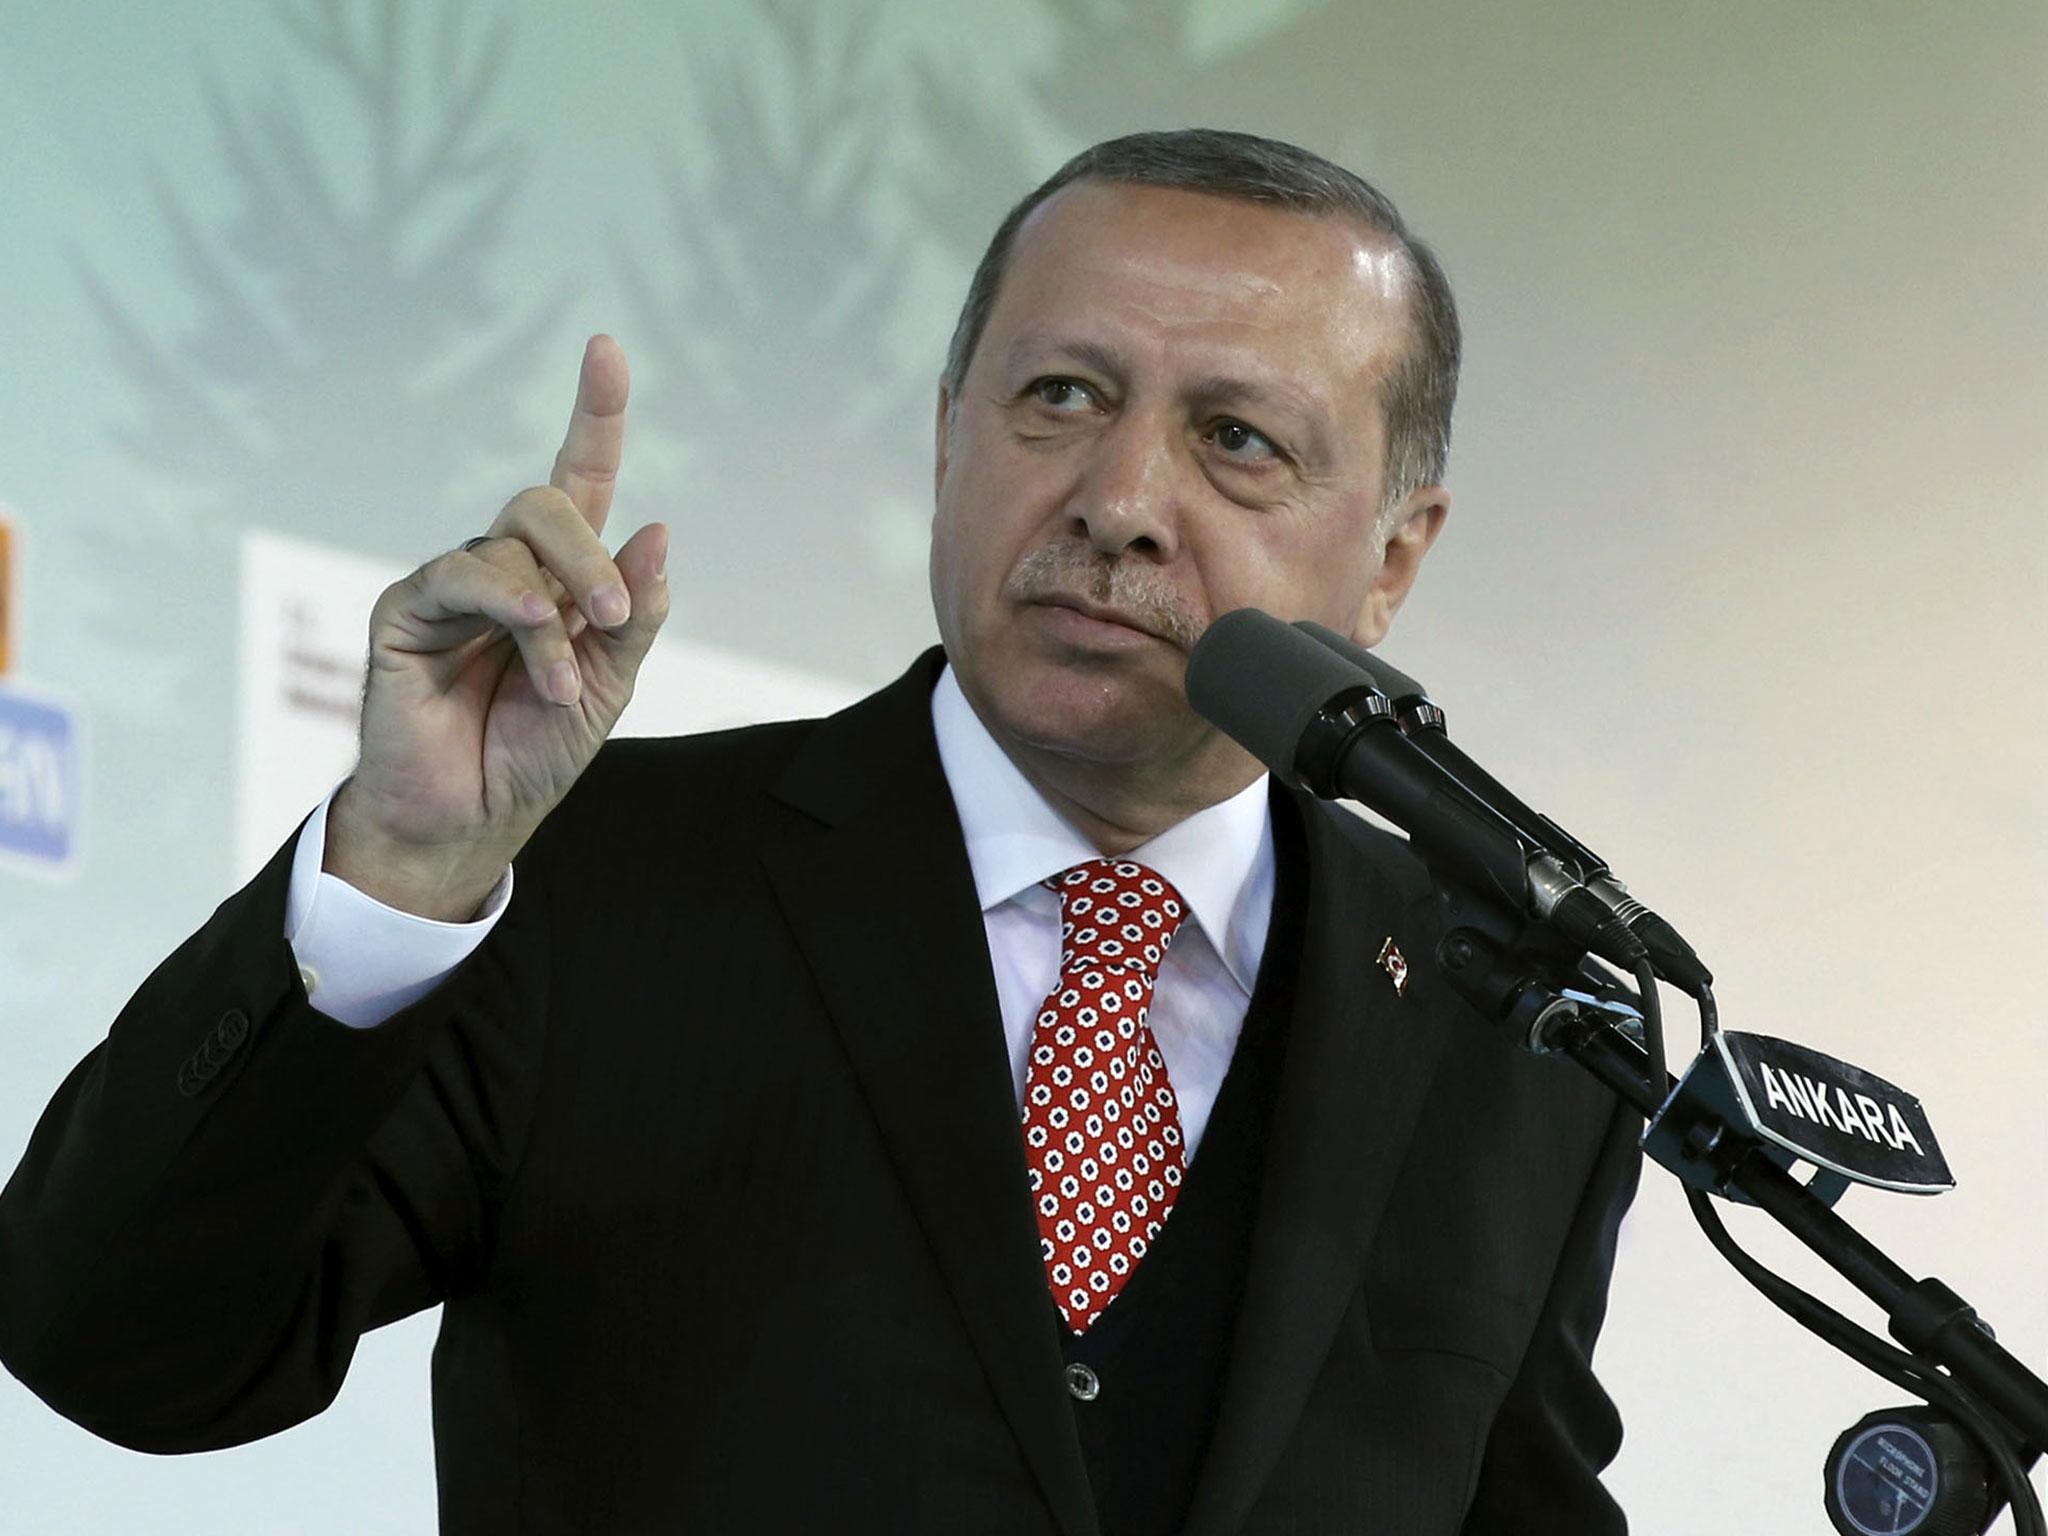   أردوغان يتوعد برد عسكرى على استفتاء كردستان